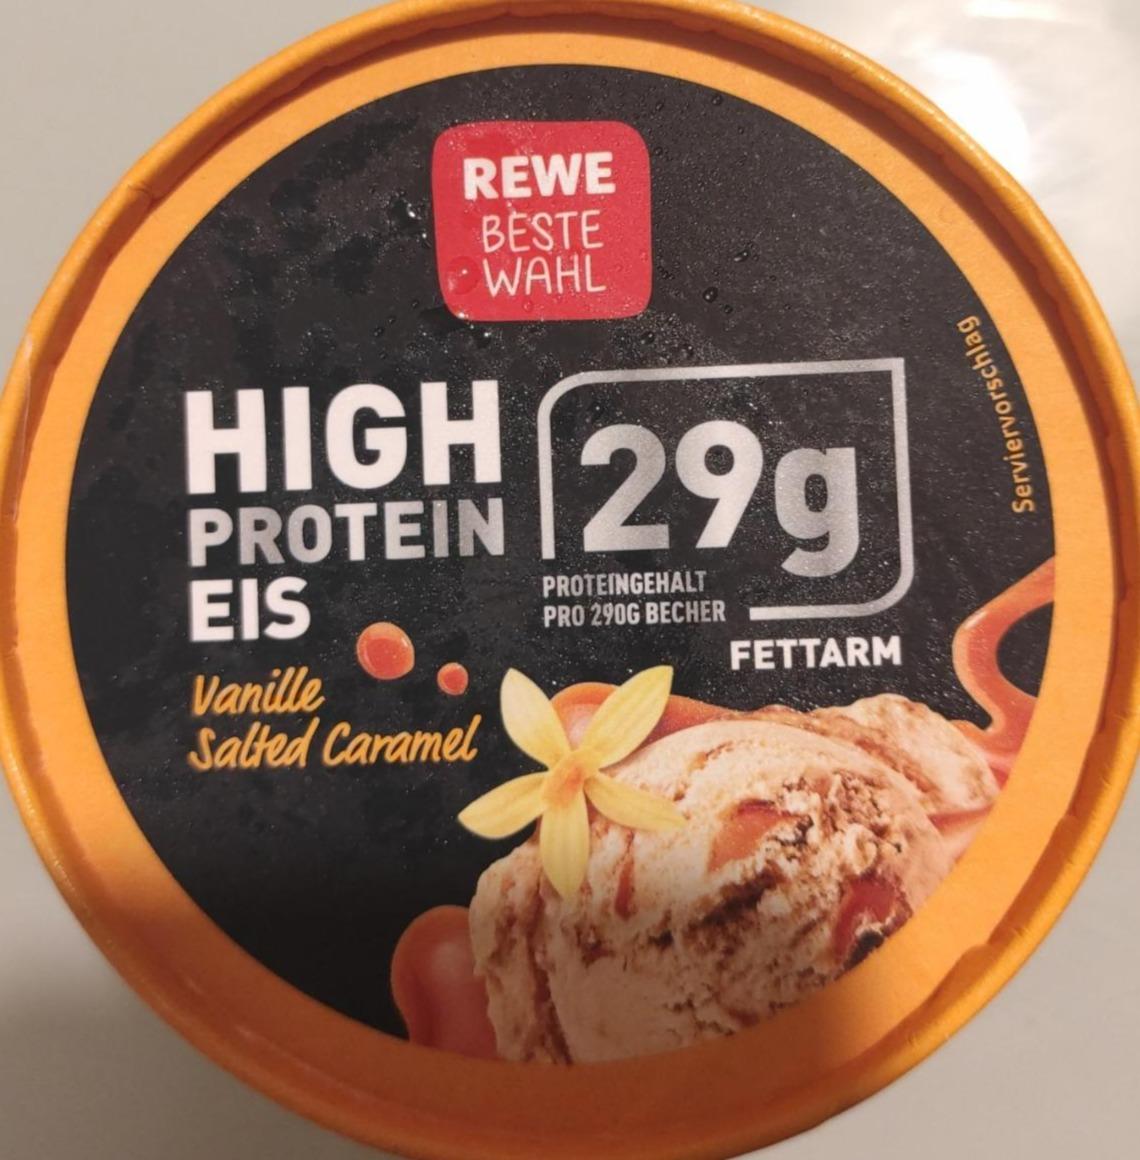 Фото - Морозиво з високим вмістом білка ванільно-солена карамель Rewe